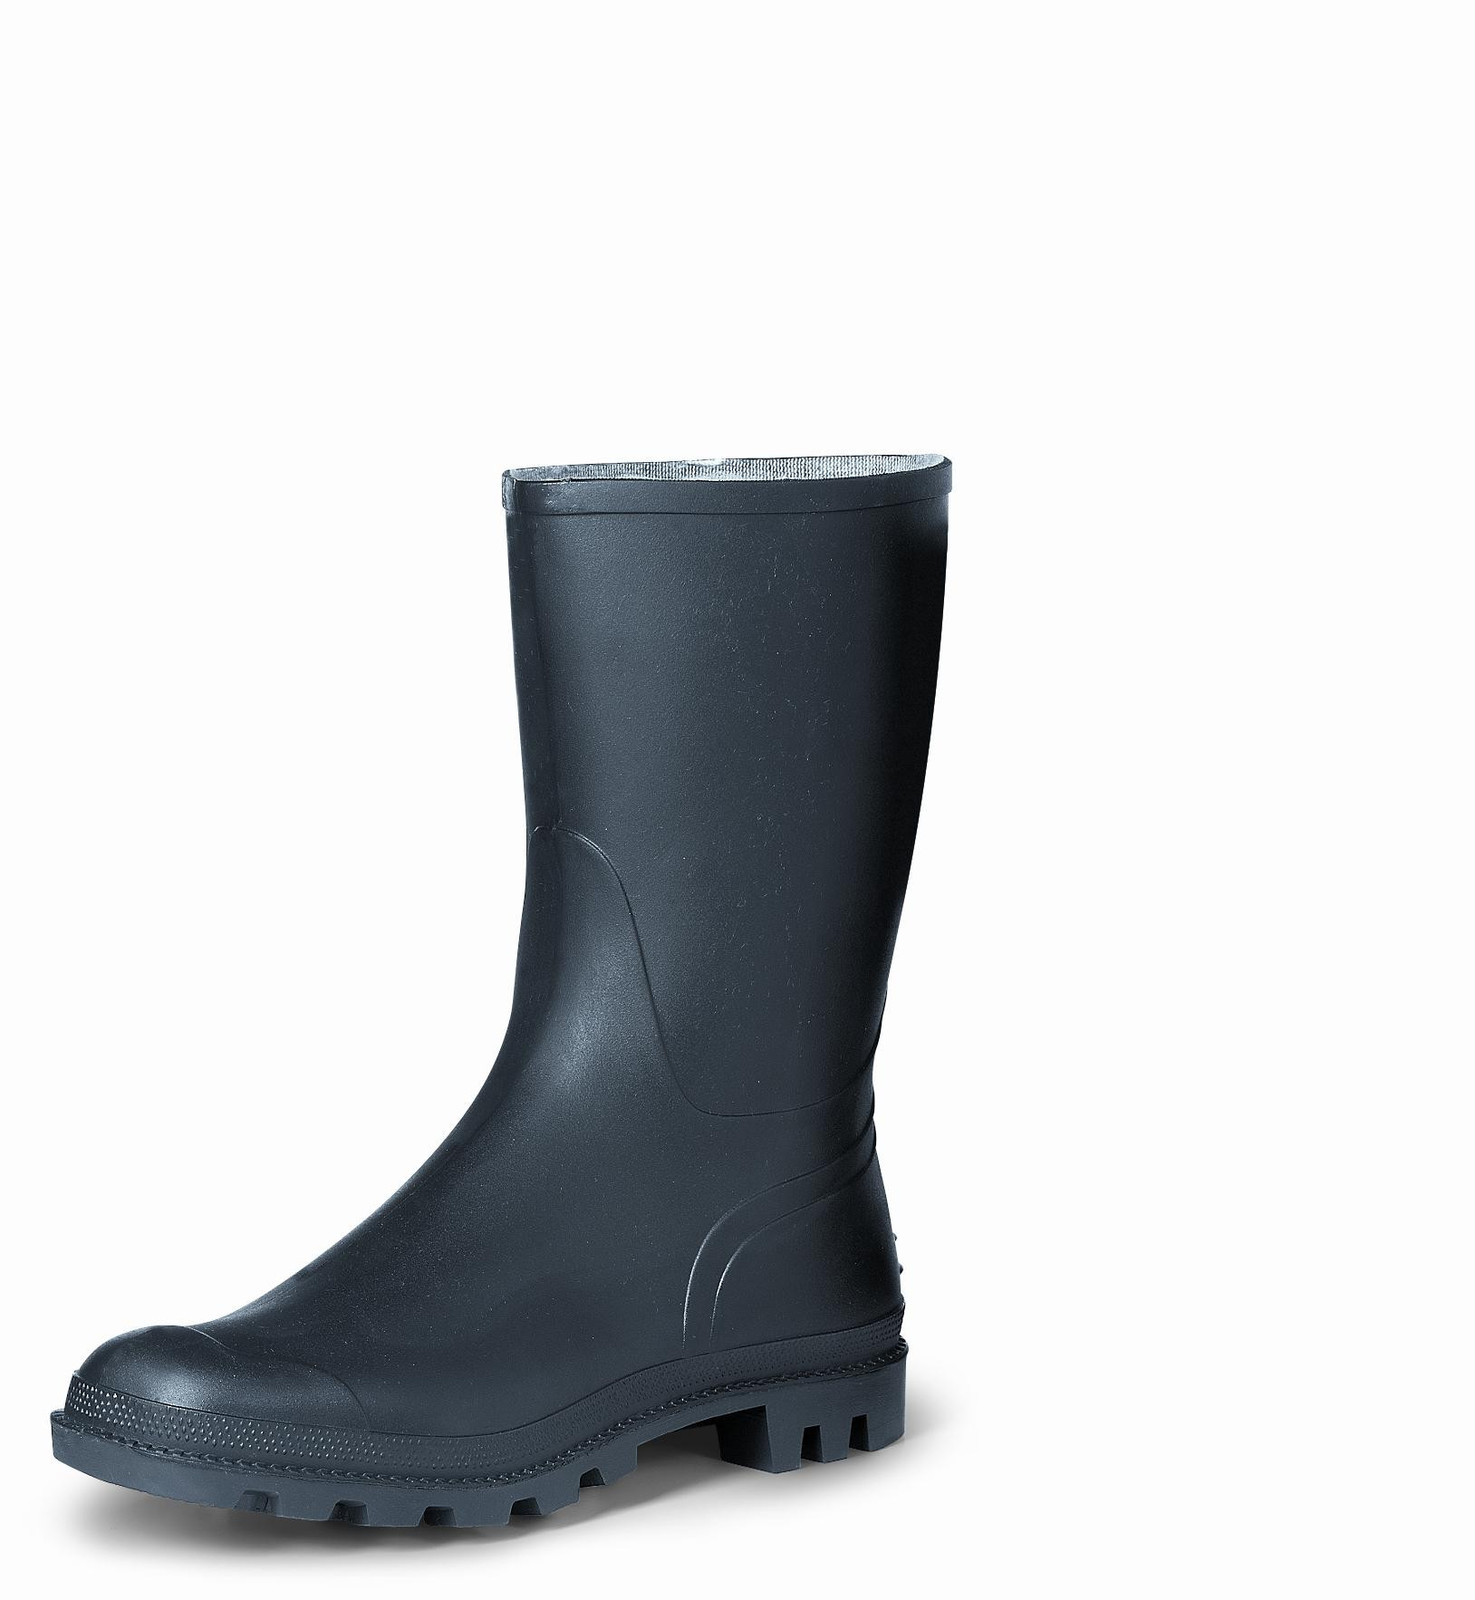 Gumáky Boots Troncheto PVC nízke - veľkosť: 43, farba: čierna